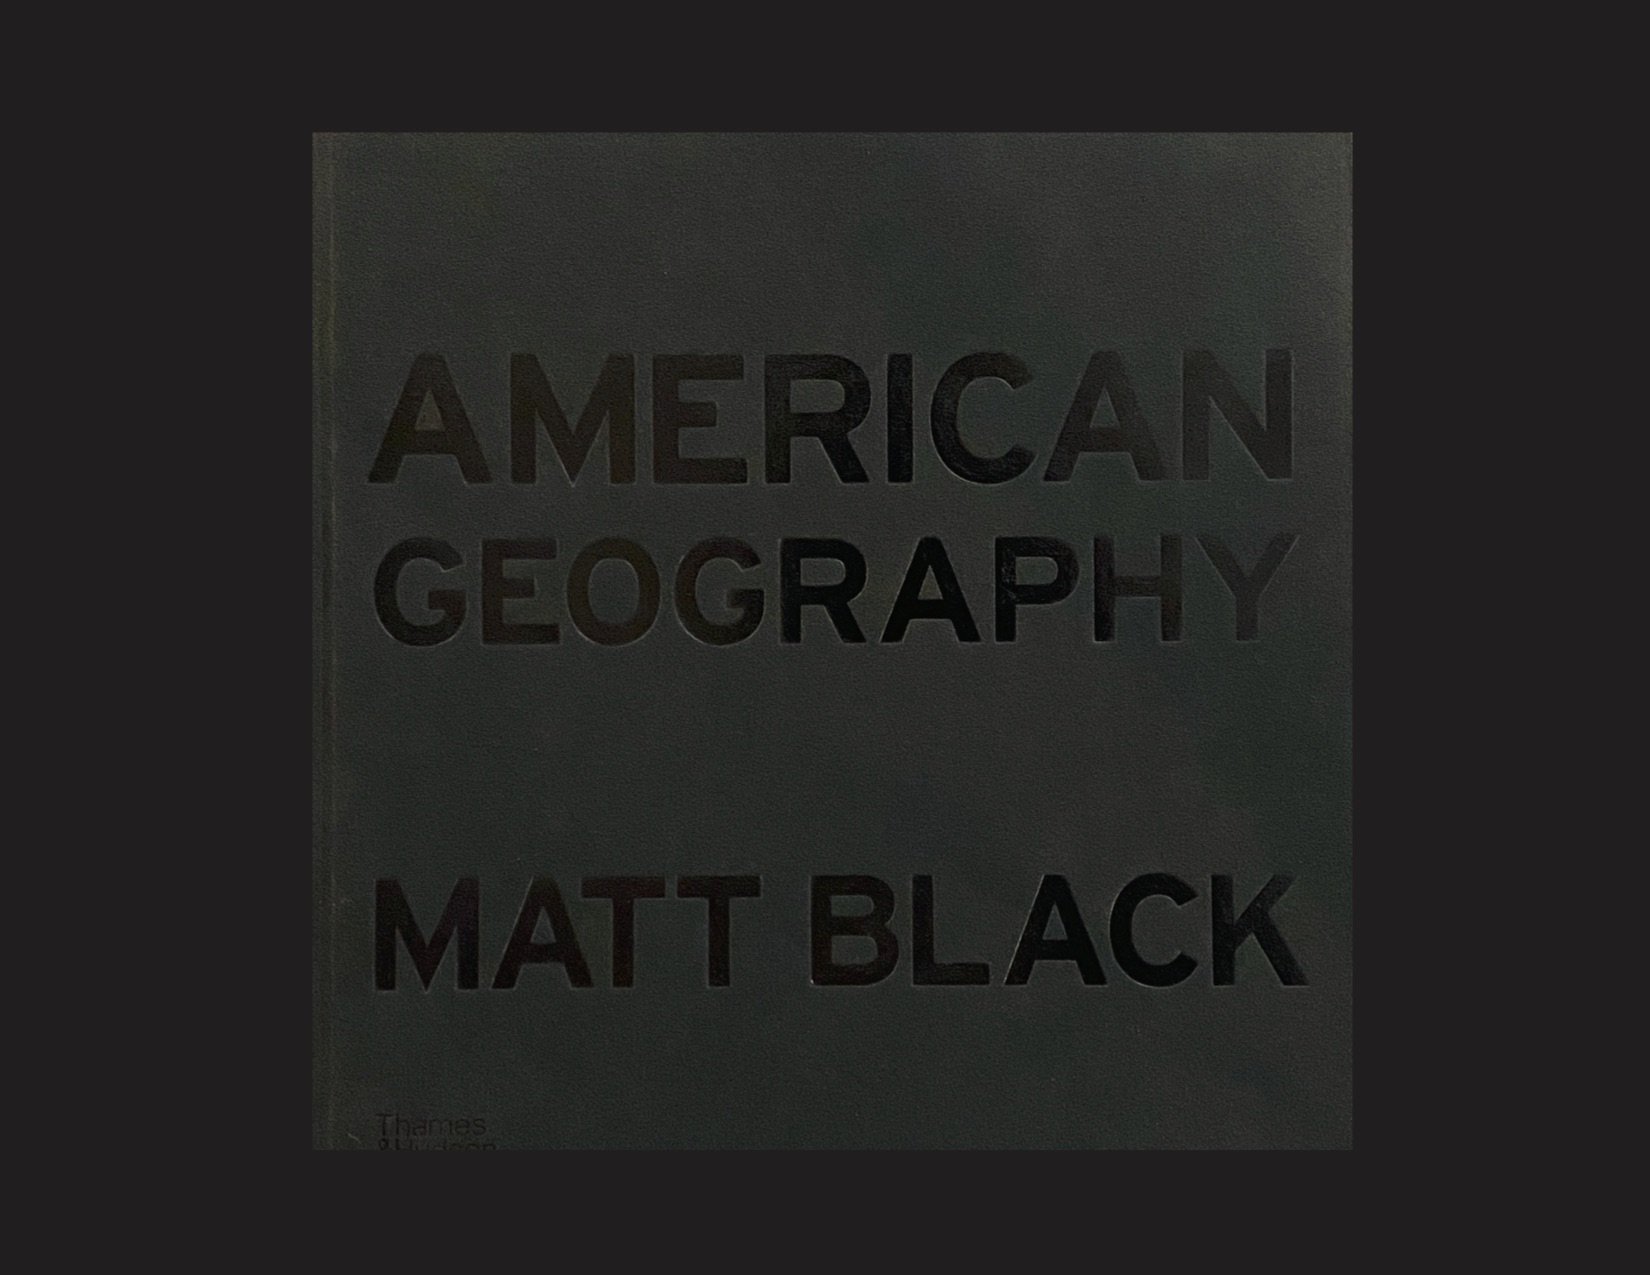 Matt Black 